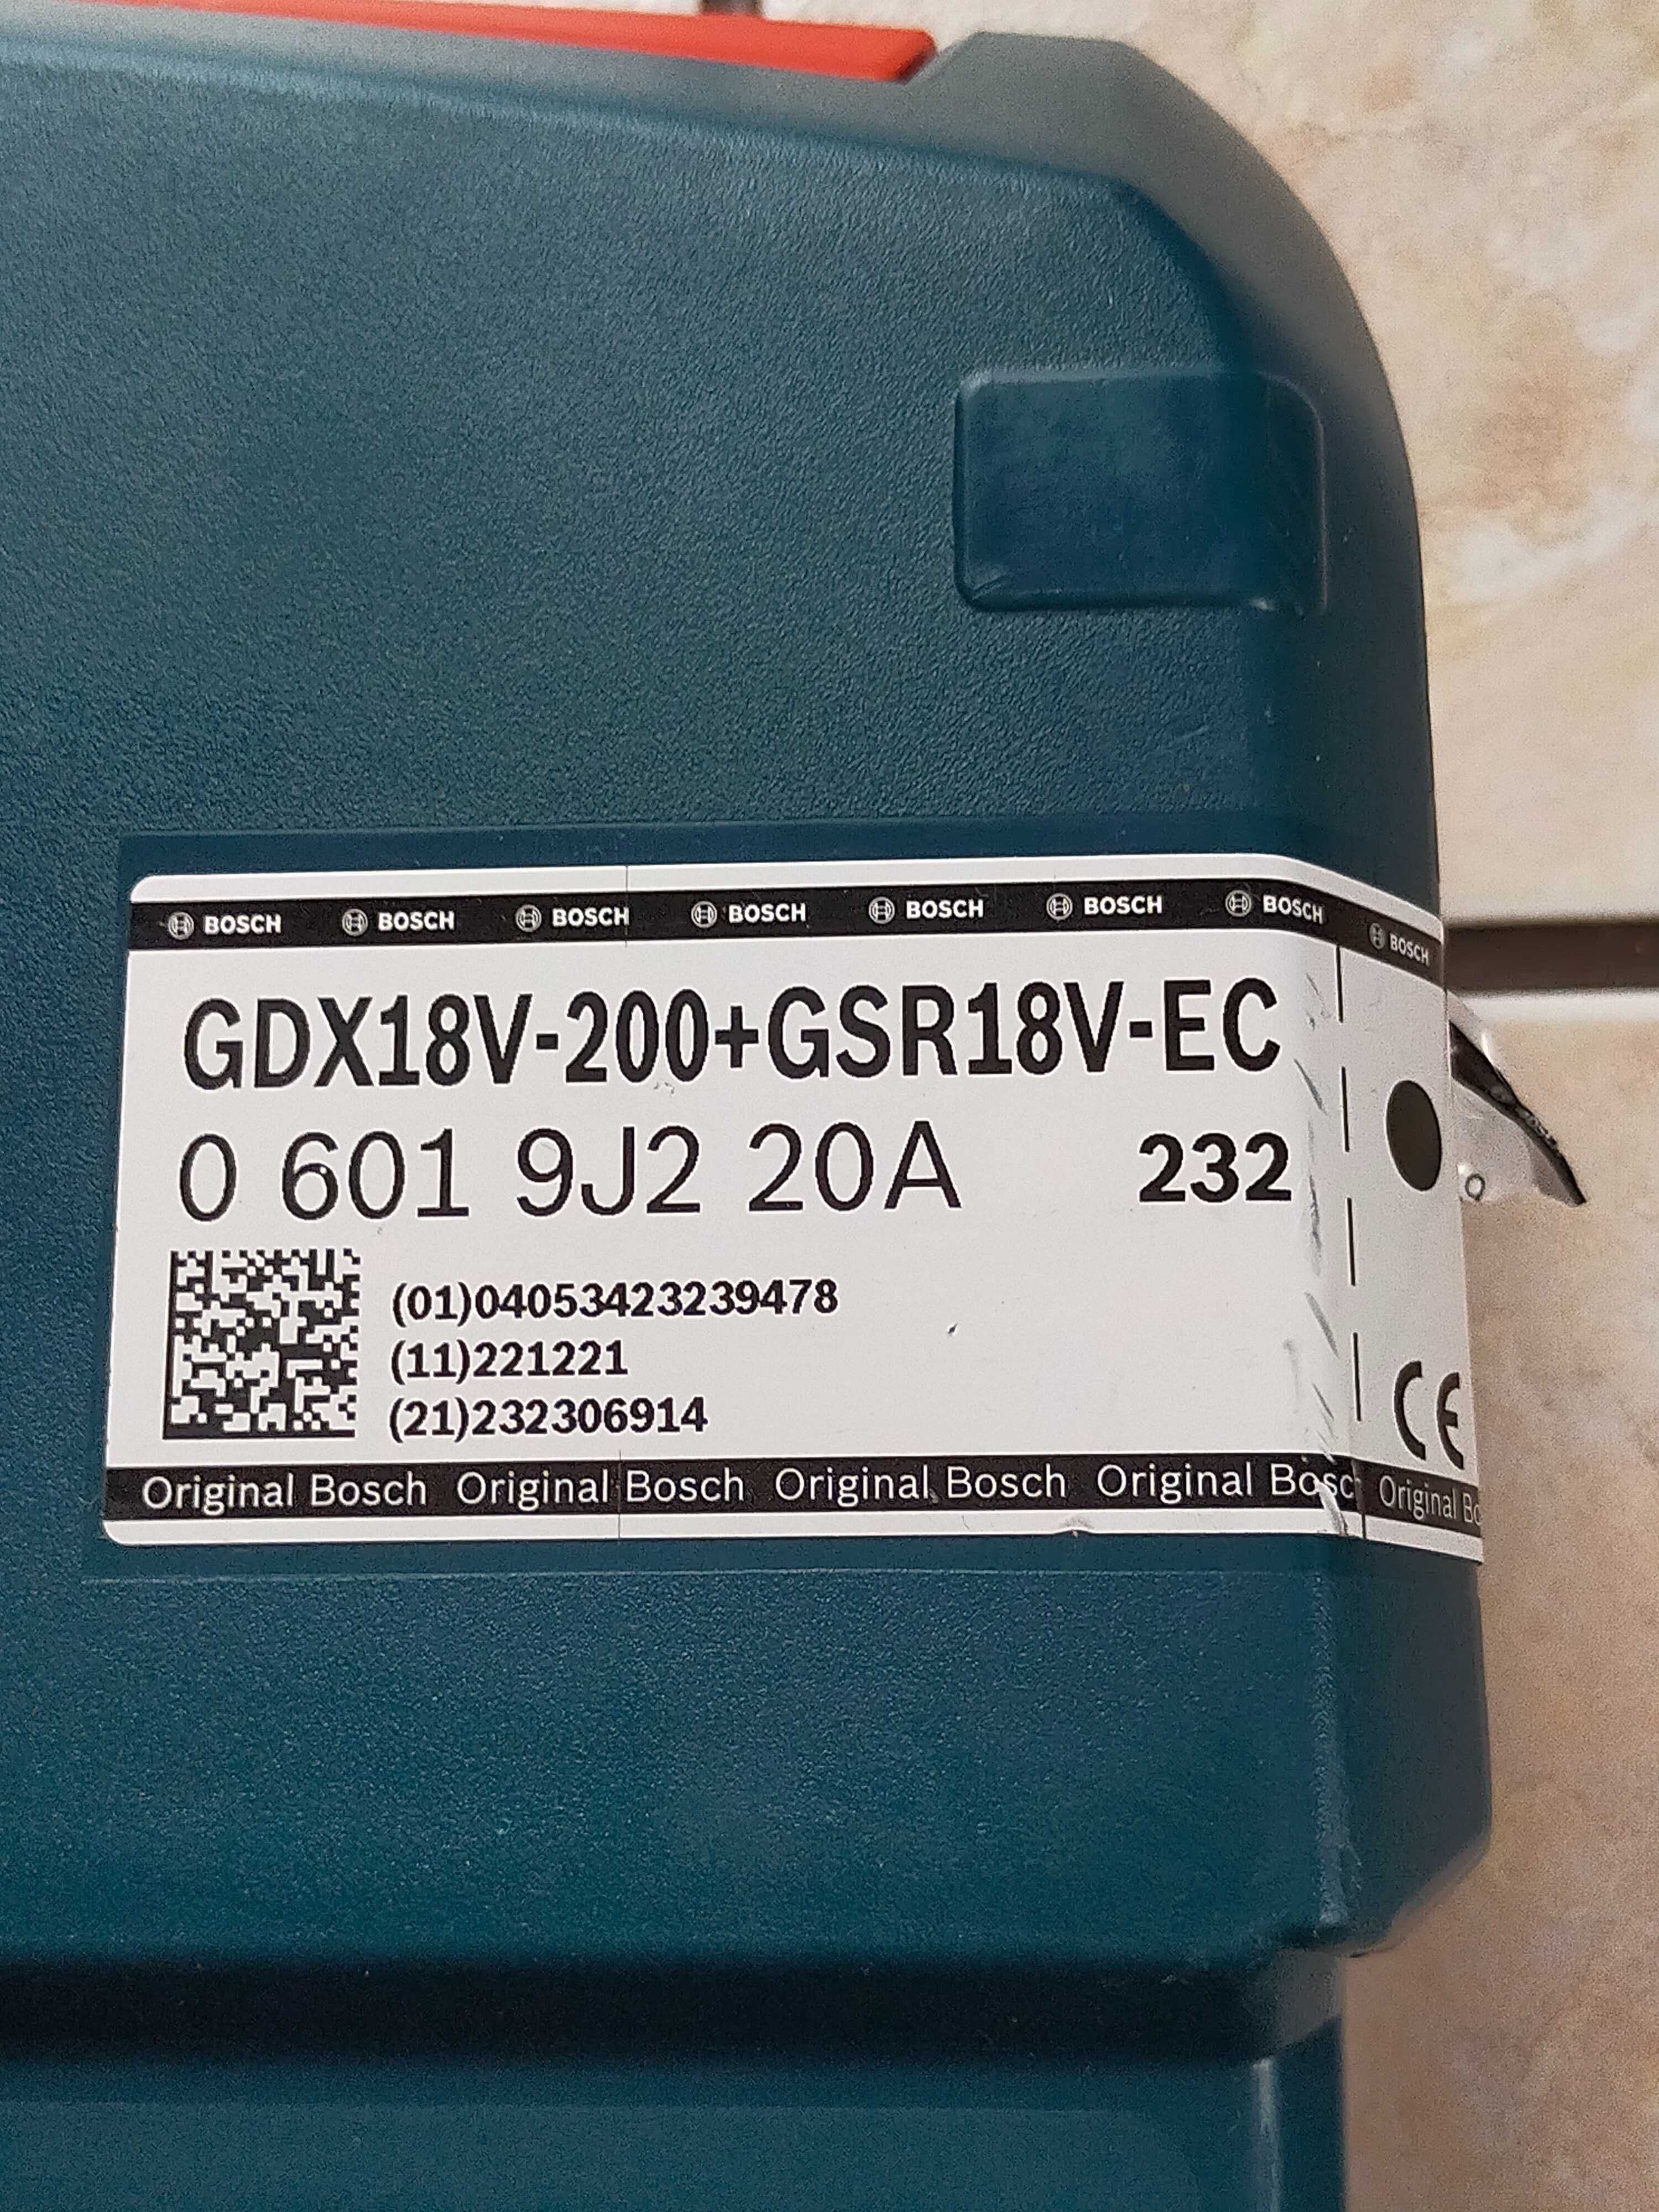 Zestaw narzędzi Bosch GDX 18V-200+GSR 18V-EC Nowe.